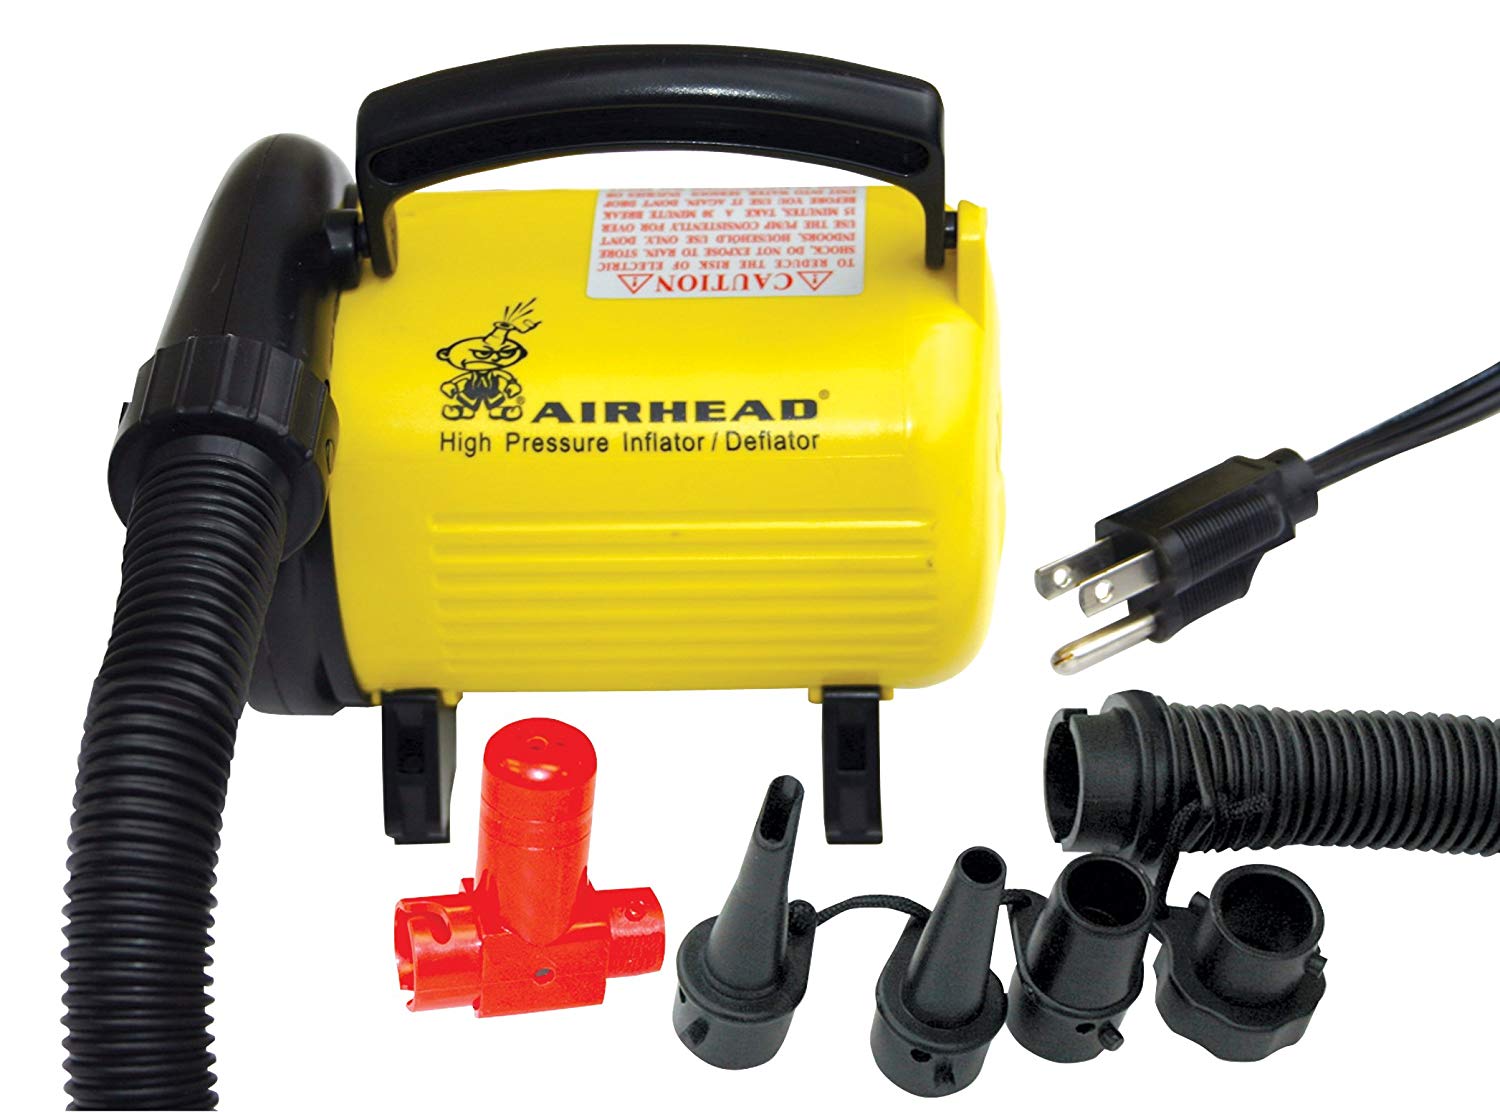 Airhead Hi Pressure Air Pump, 120v